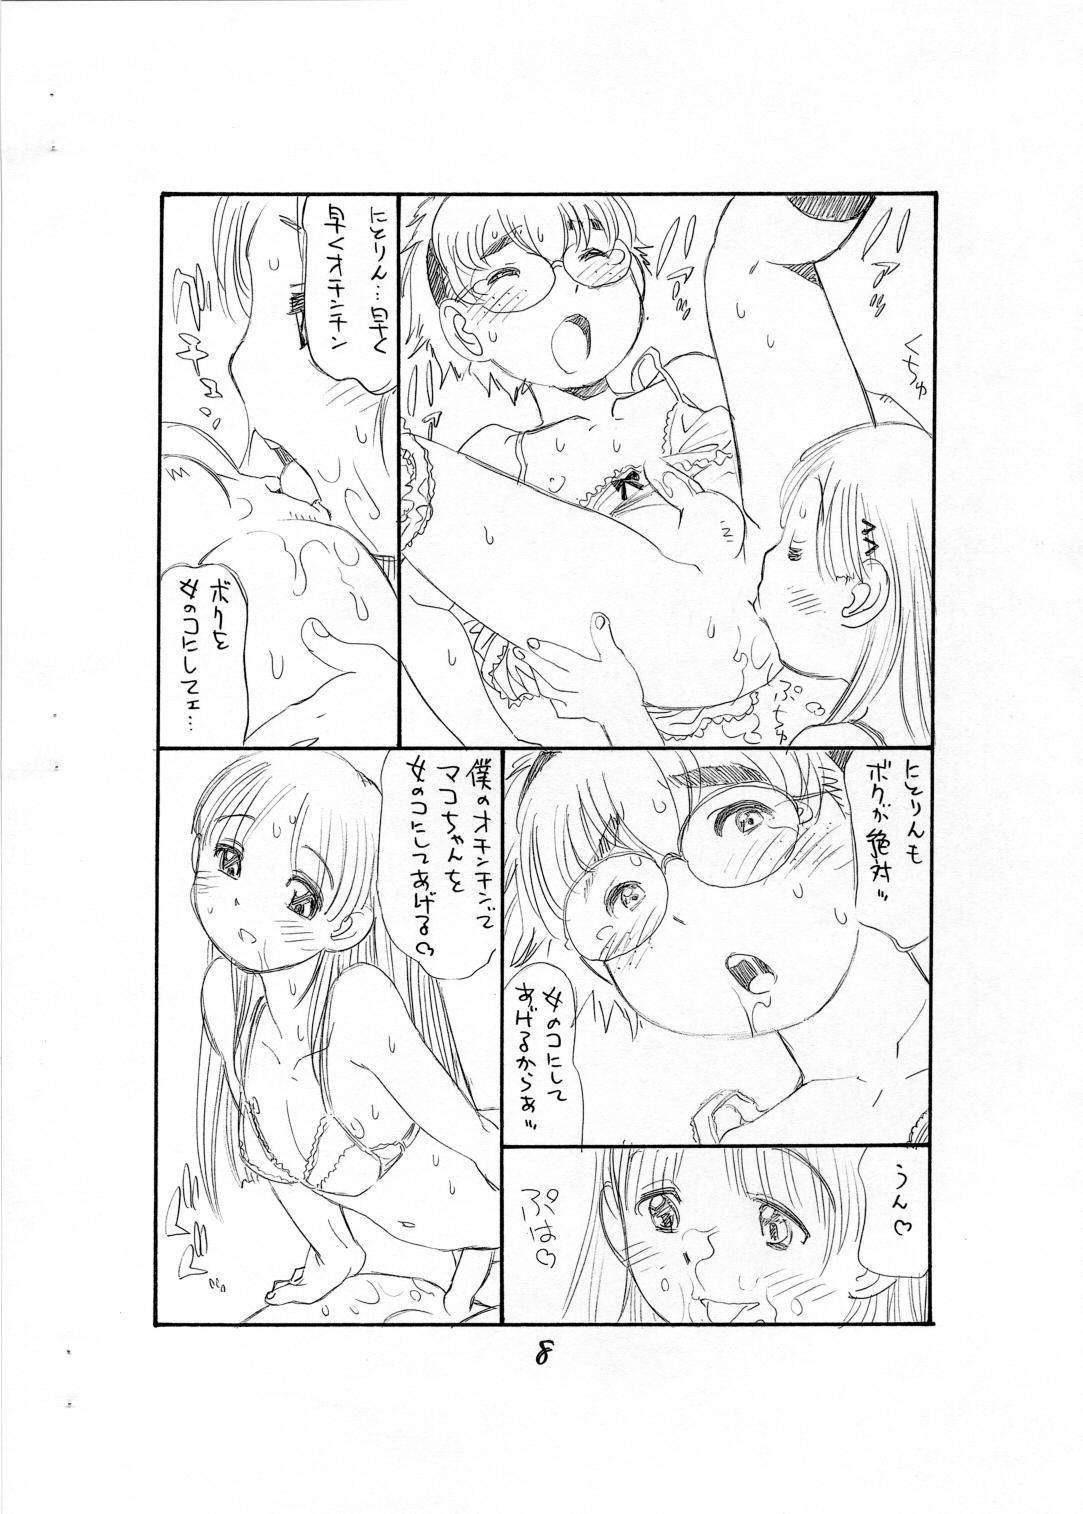 Titties Bokutachi Otokonoko - Hourou musuko Money Talks - Page 10